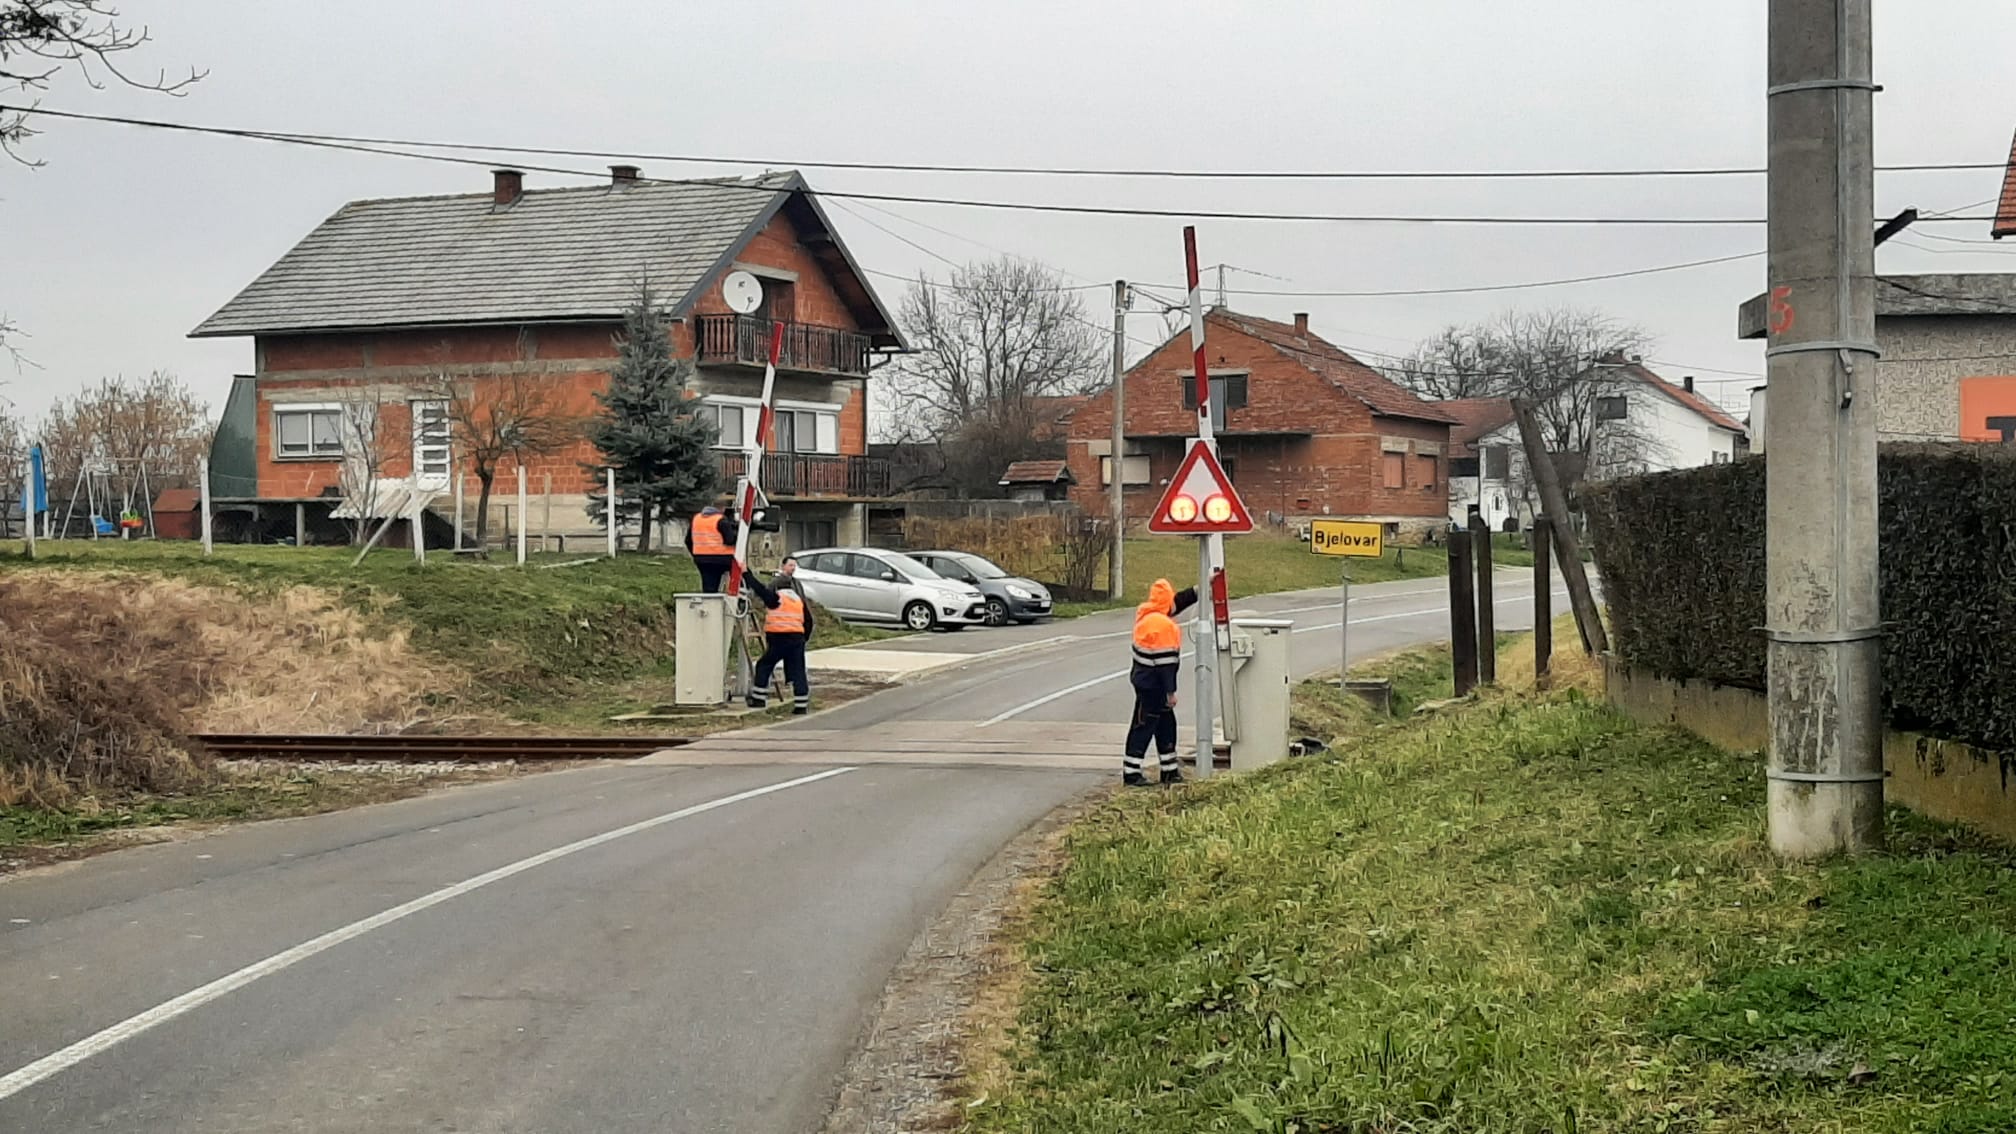 Građani upozorili da ponovno ne radi rampa u Plavnicama, odgovorio im strojovođa